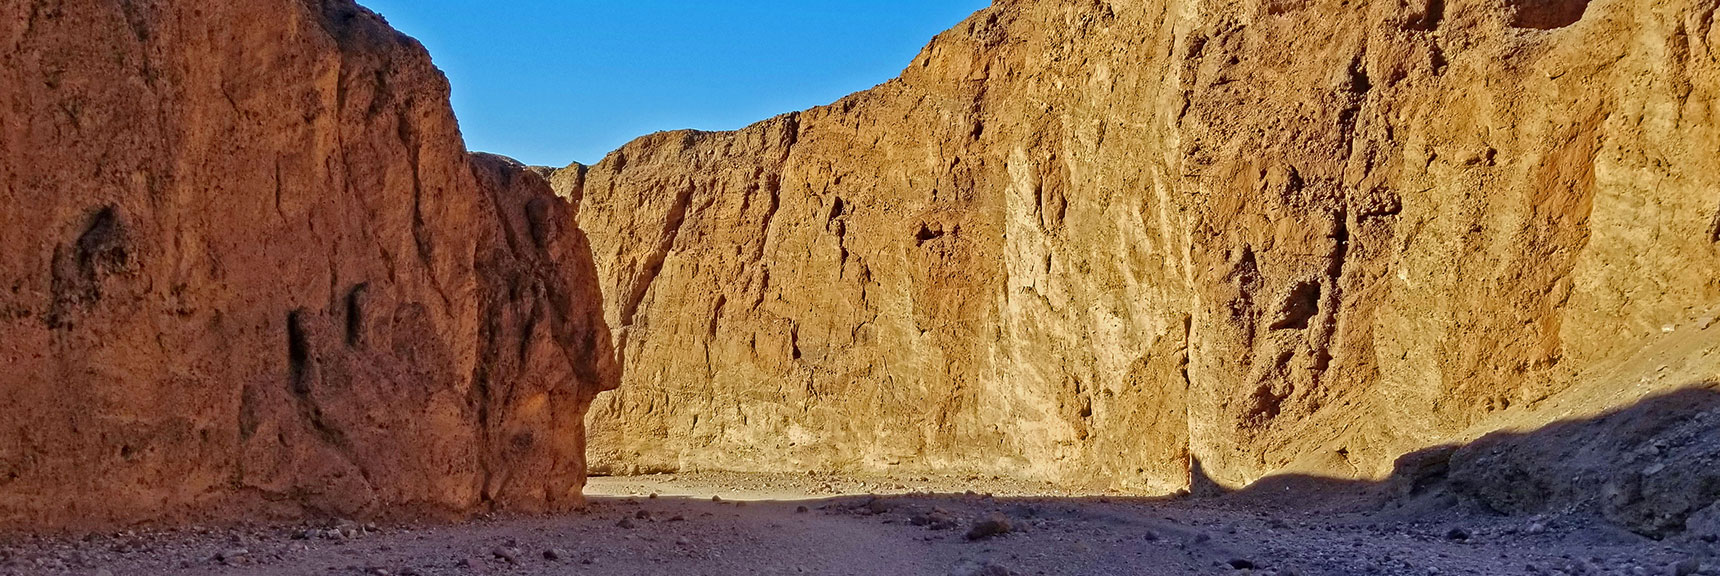 50-75ft Sharply Vertical Canyon Walls | Natural Bridge Canyon | Death Valley National Park, California